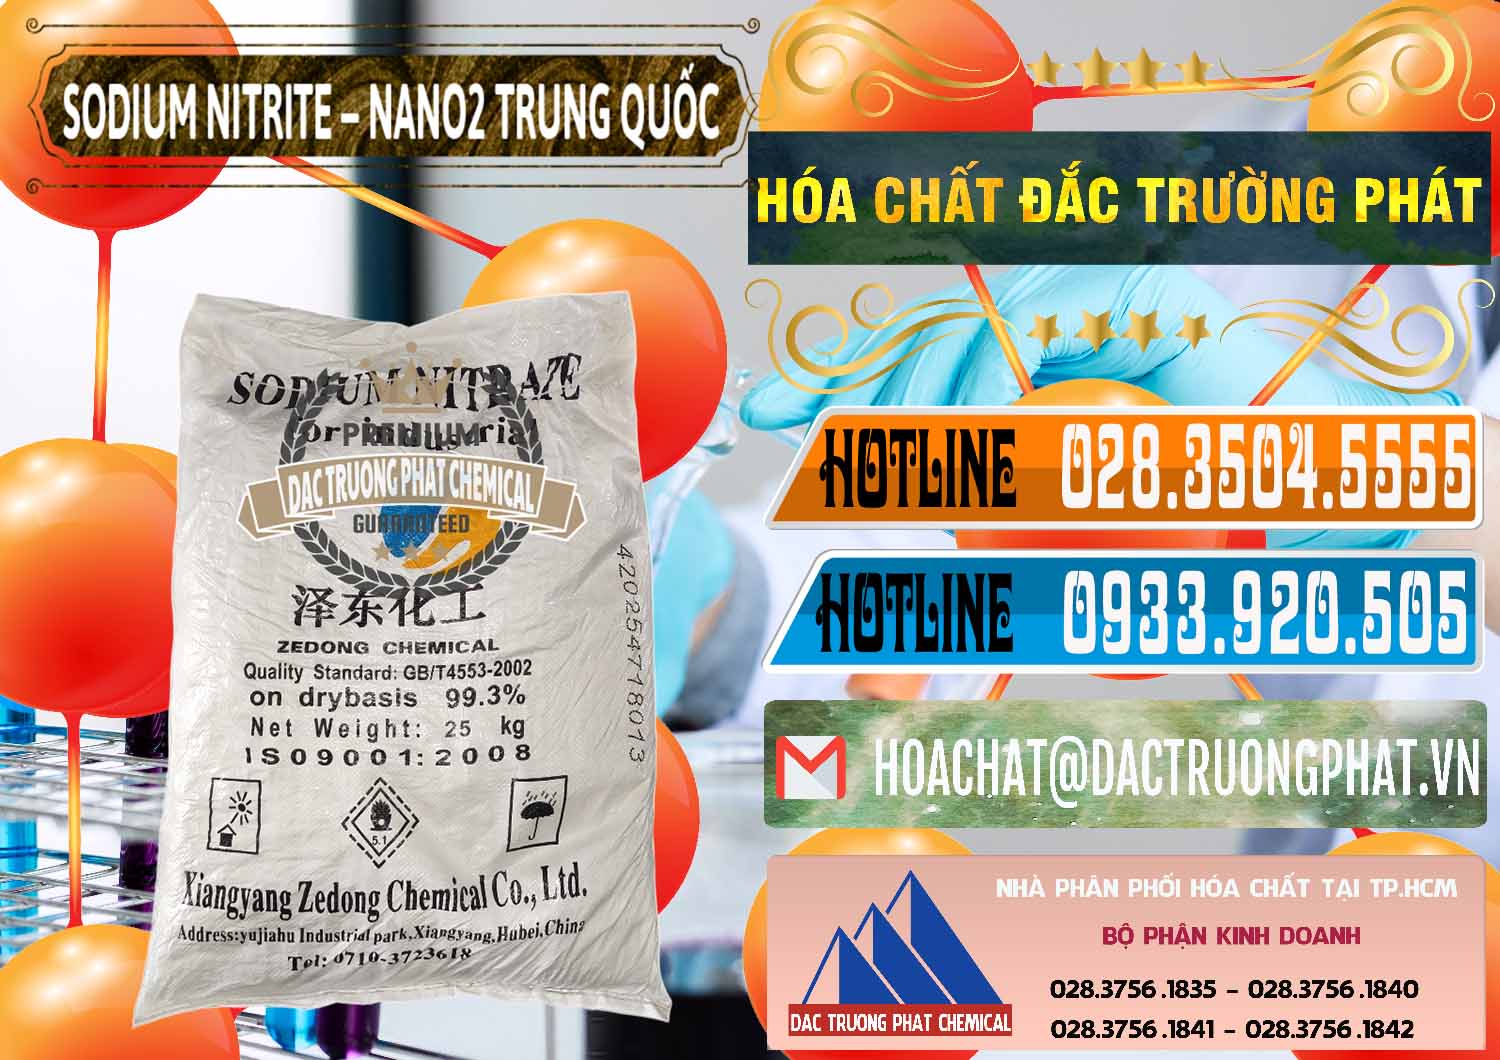 Đơn vị chuyên bán & phân phối Sodium Nitrite - NANO2 Zedong Trung Quốc China - 0149 - Cty chuyên cung cấp ( kinh doanh ) hóa chất tại TP.HCM - stmp.net